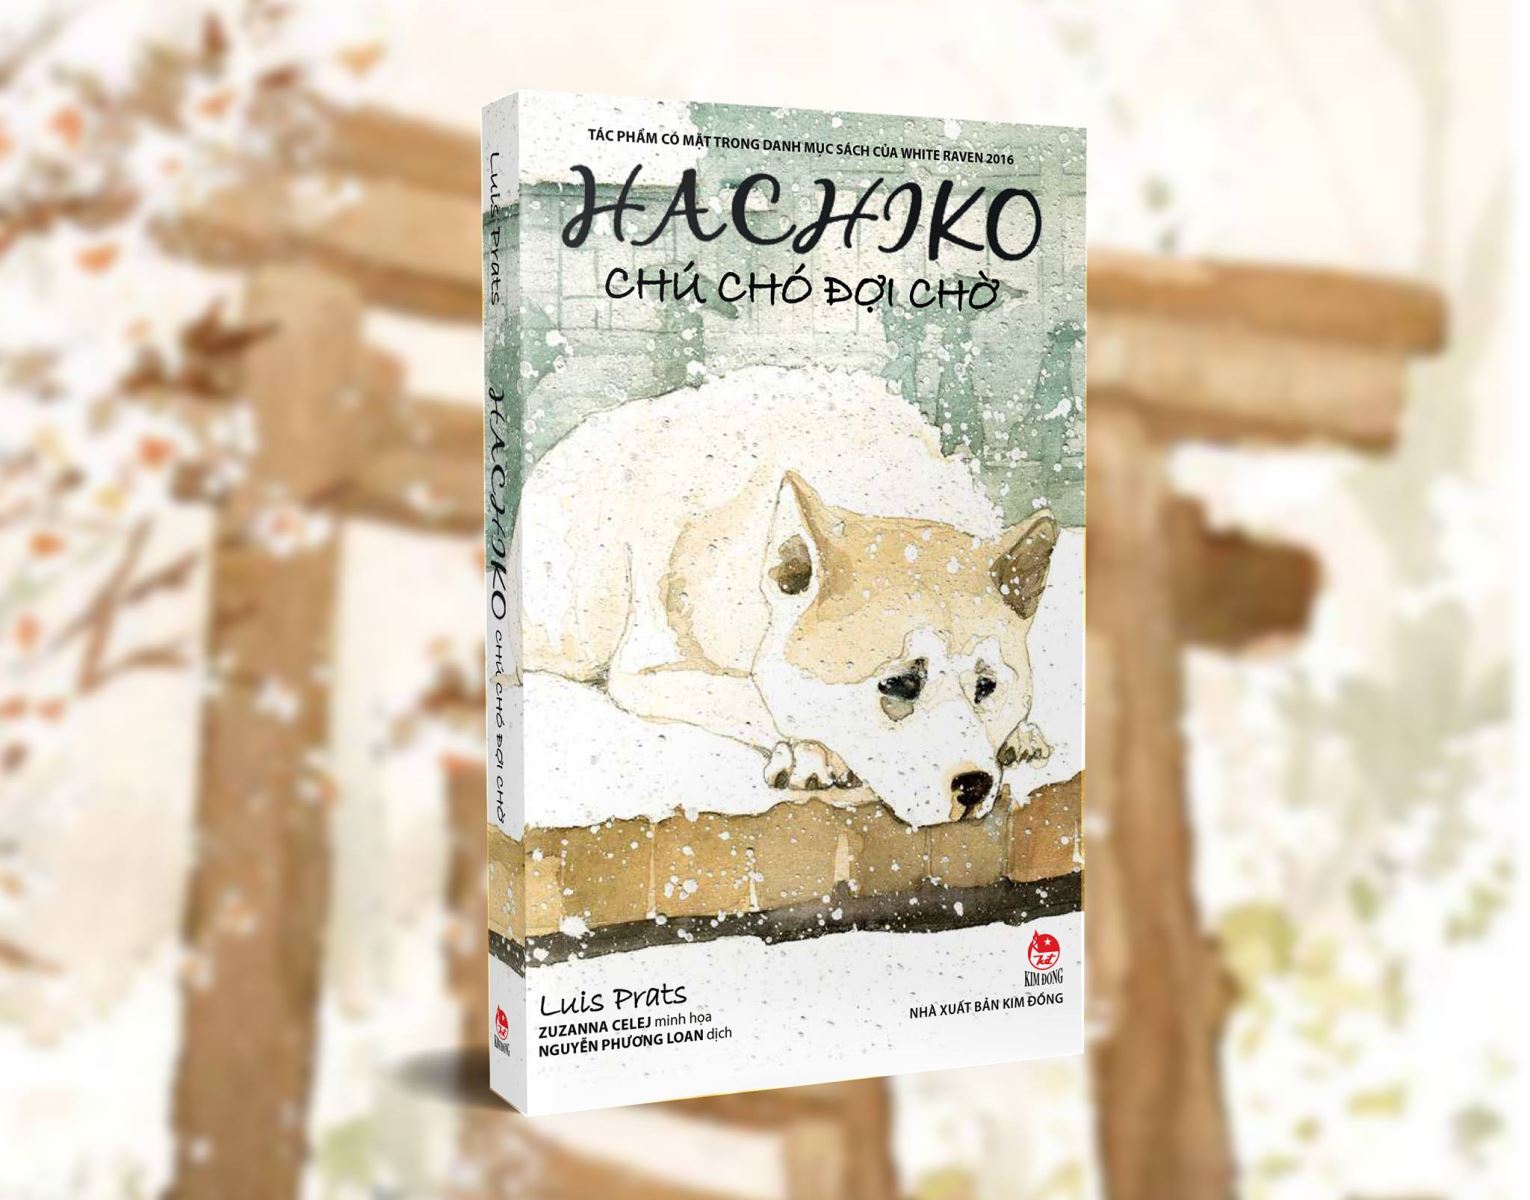 Chú chó Hachiko: Chuyện về chú chó Hachiko rất nổi tiếng trên toàn thế giới và đã trở thành biểu tượng cho sự trung thành và tình cảm. Hãy xem qua những bức ảnh đáng yêu của chú chó này và cảm nhận sự chân thành và tình yêu thương của chúng ta đối với loài vật.